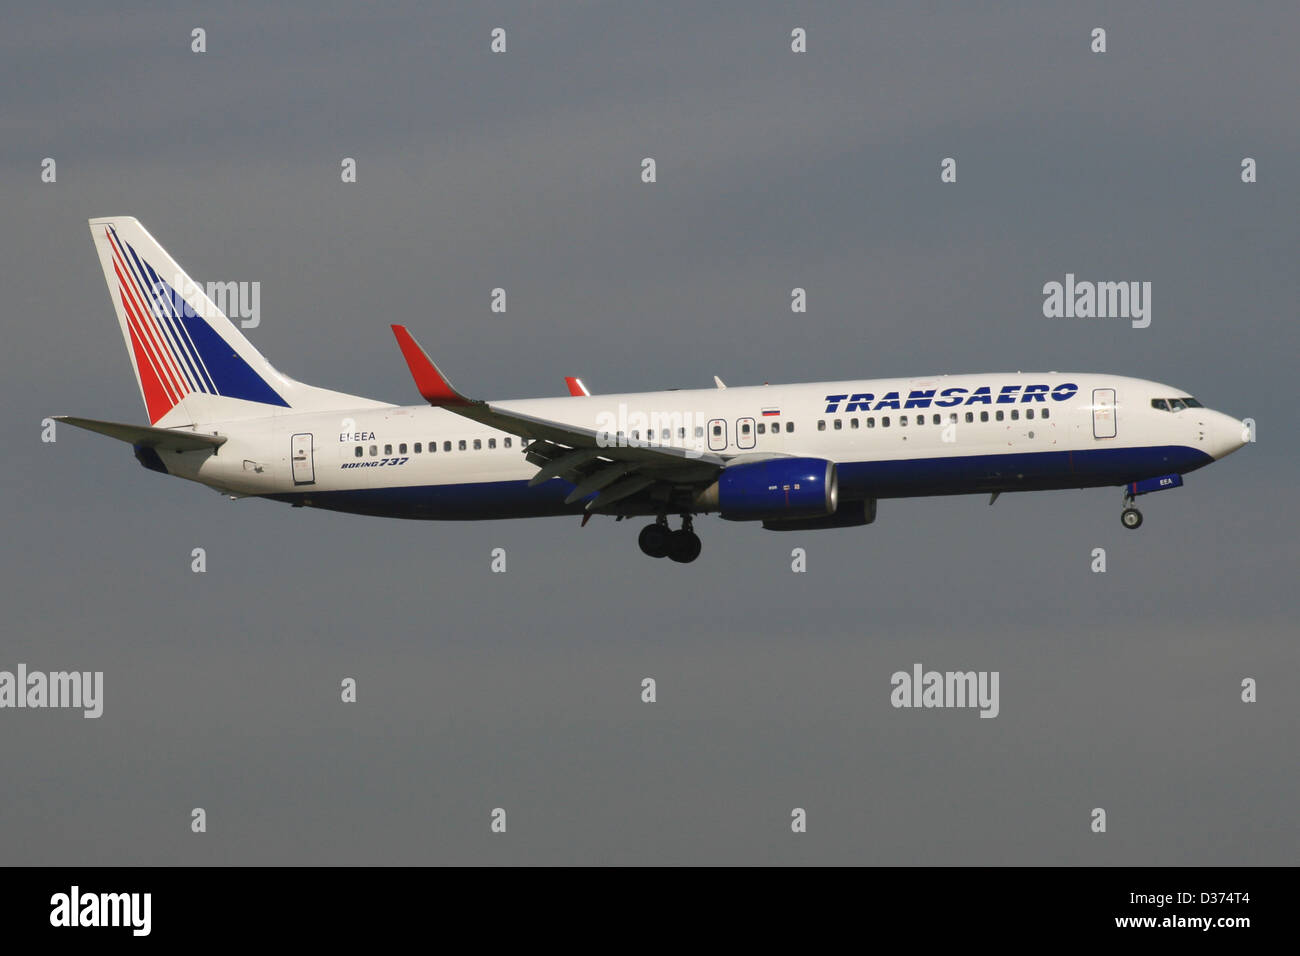 Russia boeing 737 immagini e fotografie stock ad alta risoluzione - Alamy